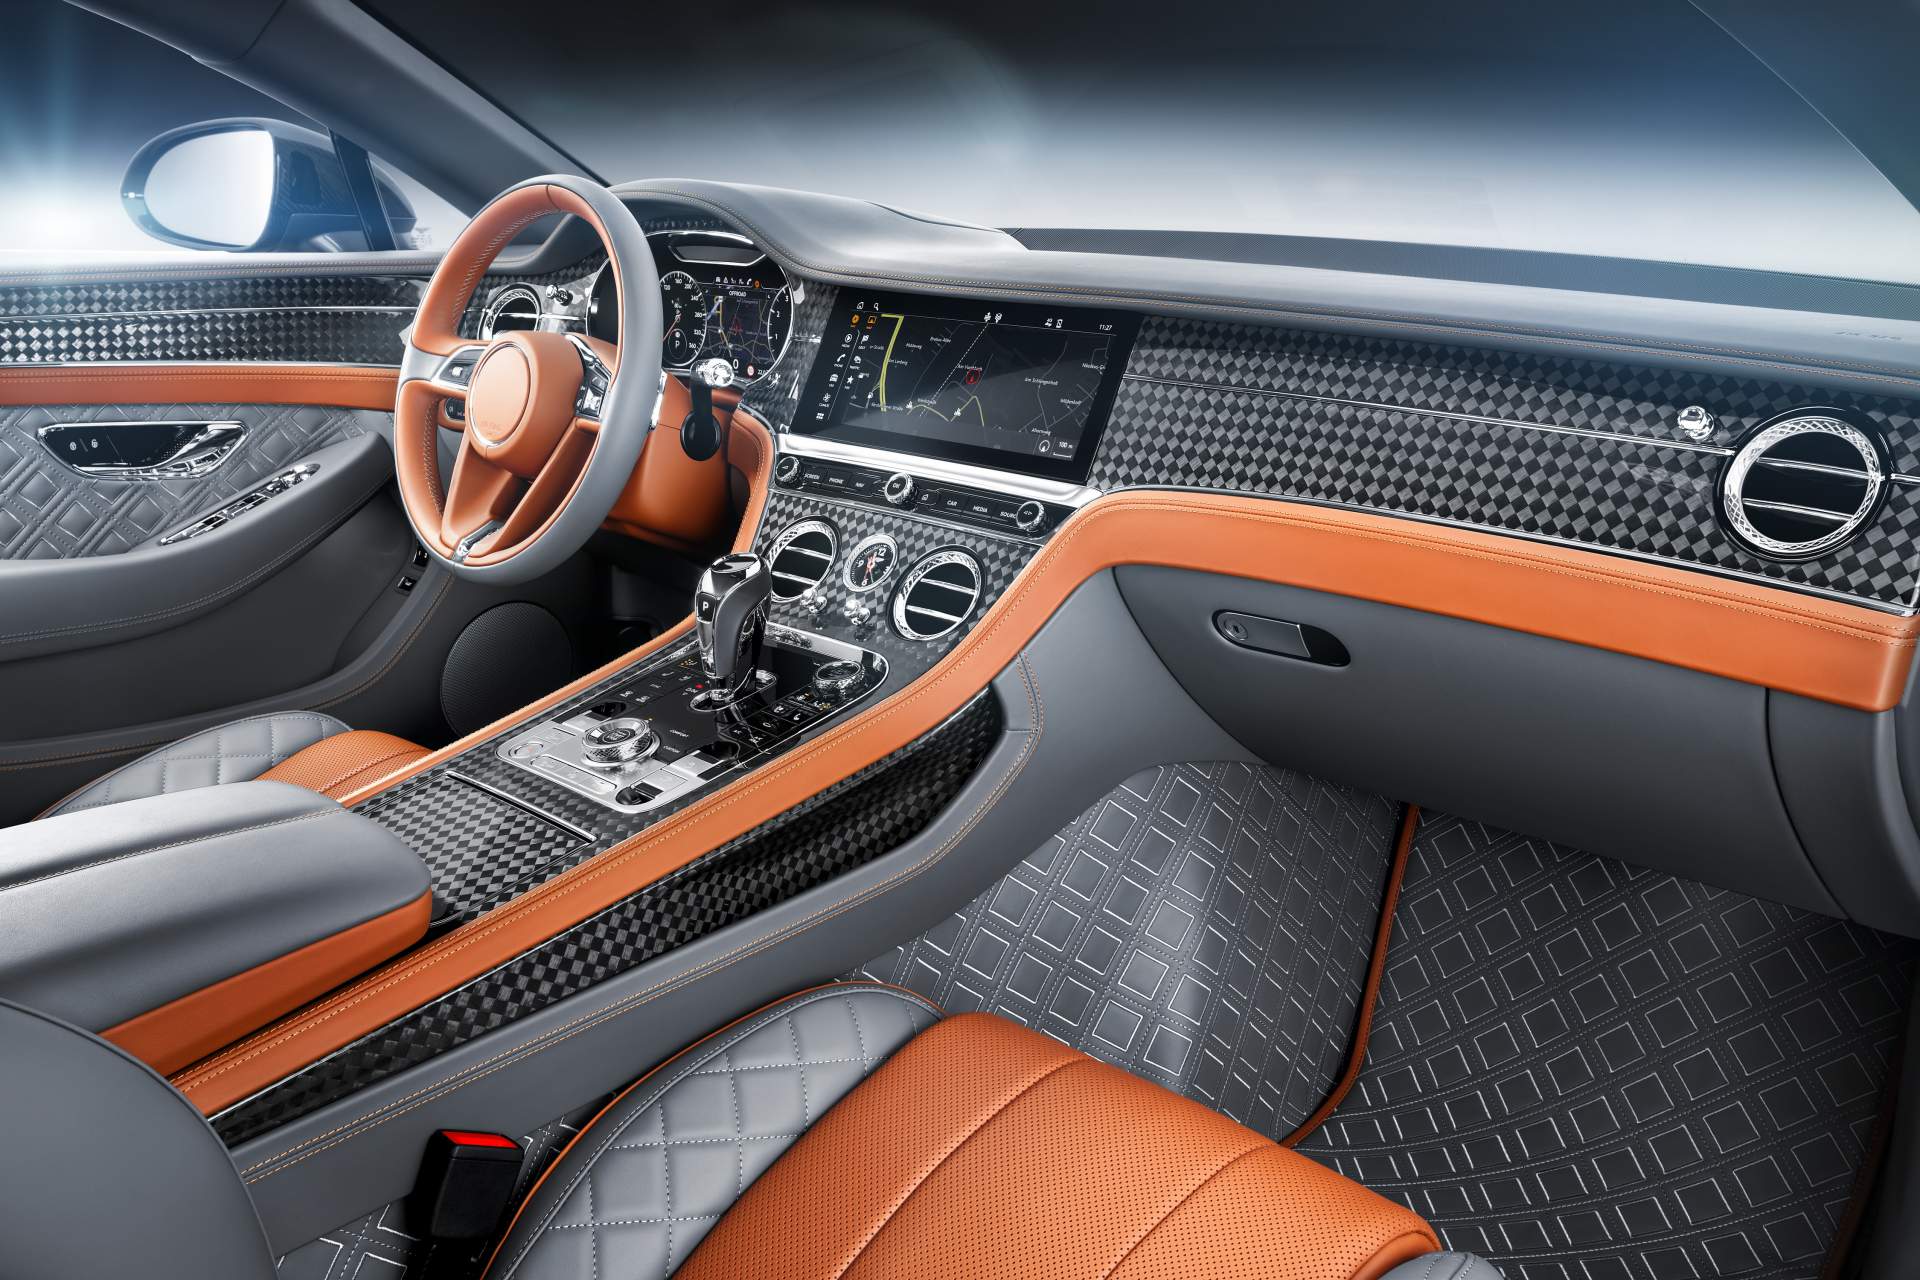 Startechs New Bentley Continental Gt Shows Posh Interior 10 